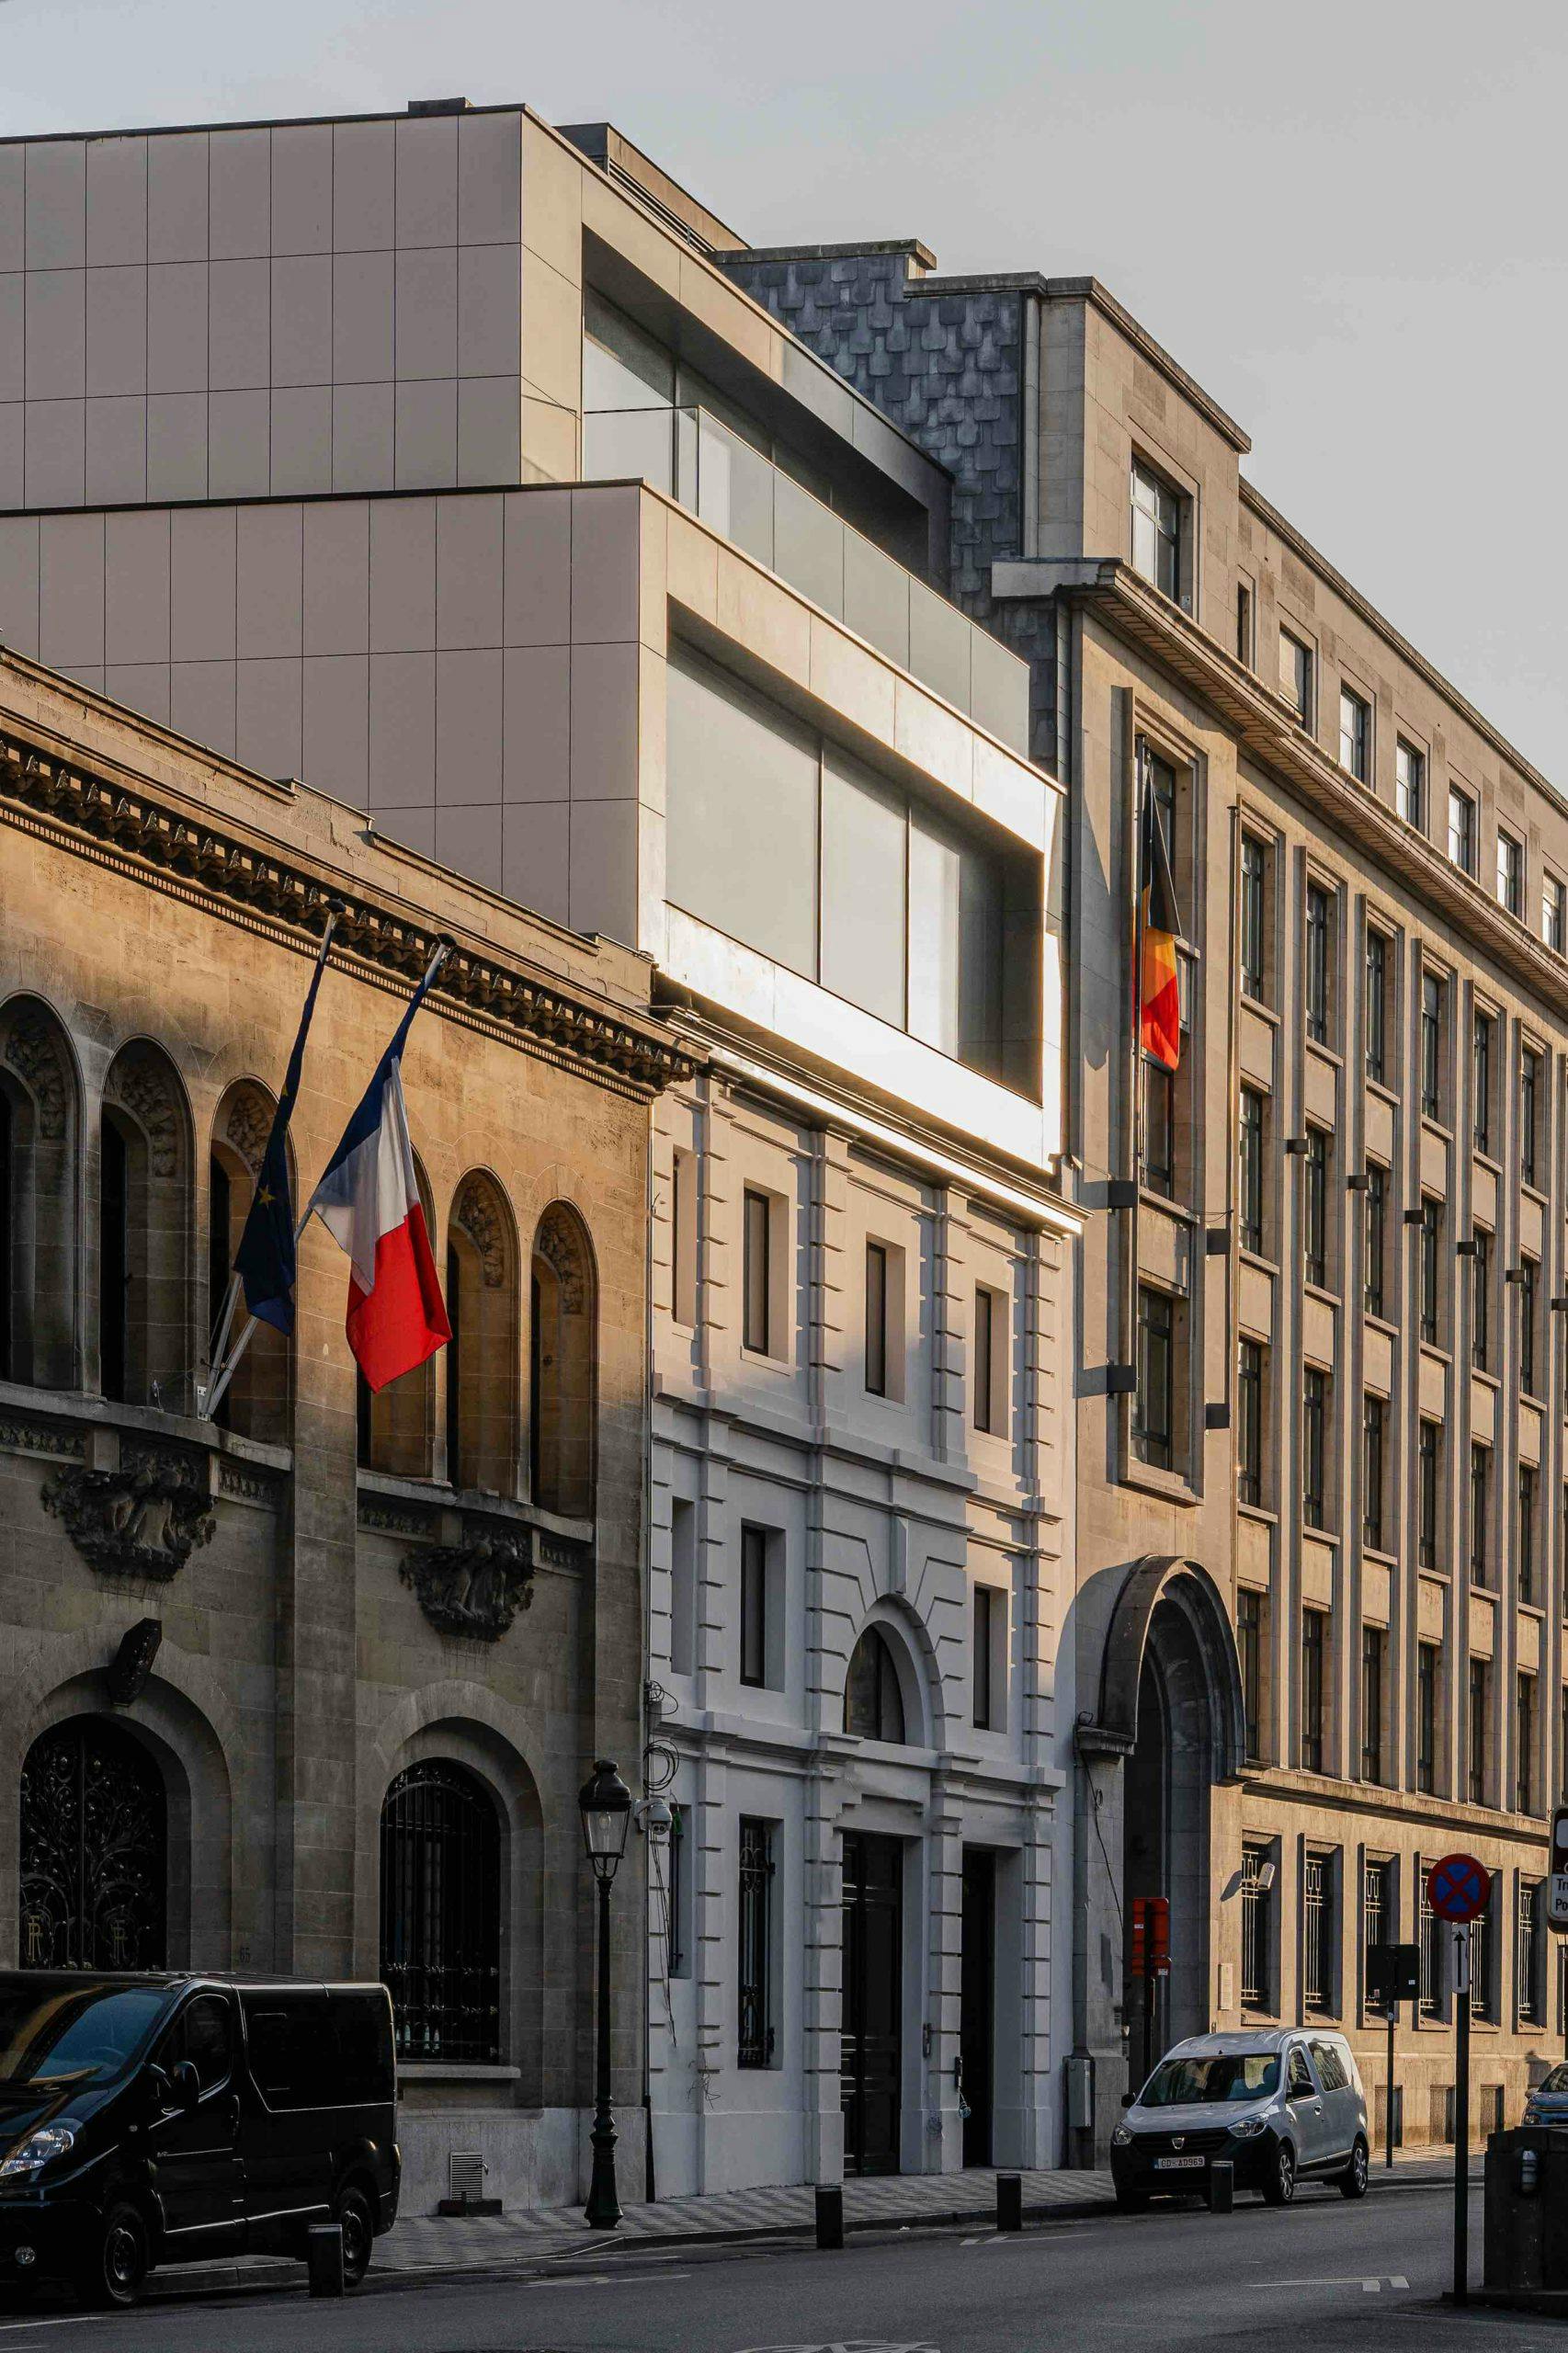 Numéro d'image 48 de la section actuelle de Réflexions en Dekton: la rénovation du bâtiment classique « The Duke » de Bruxelles de Cosentino France